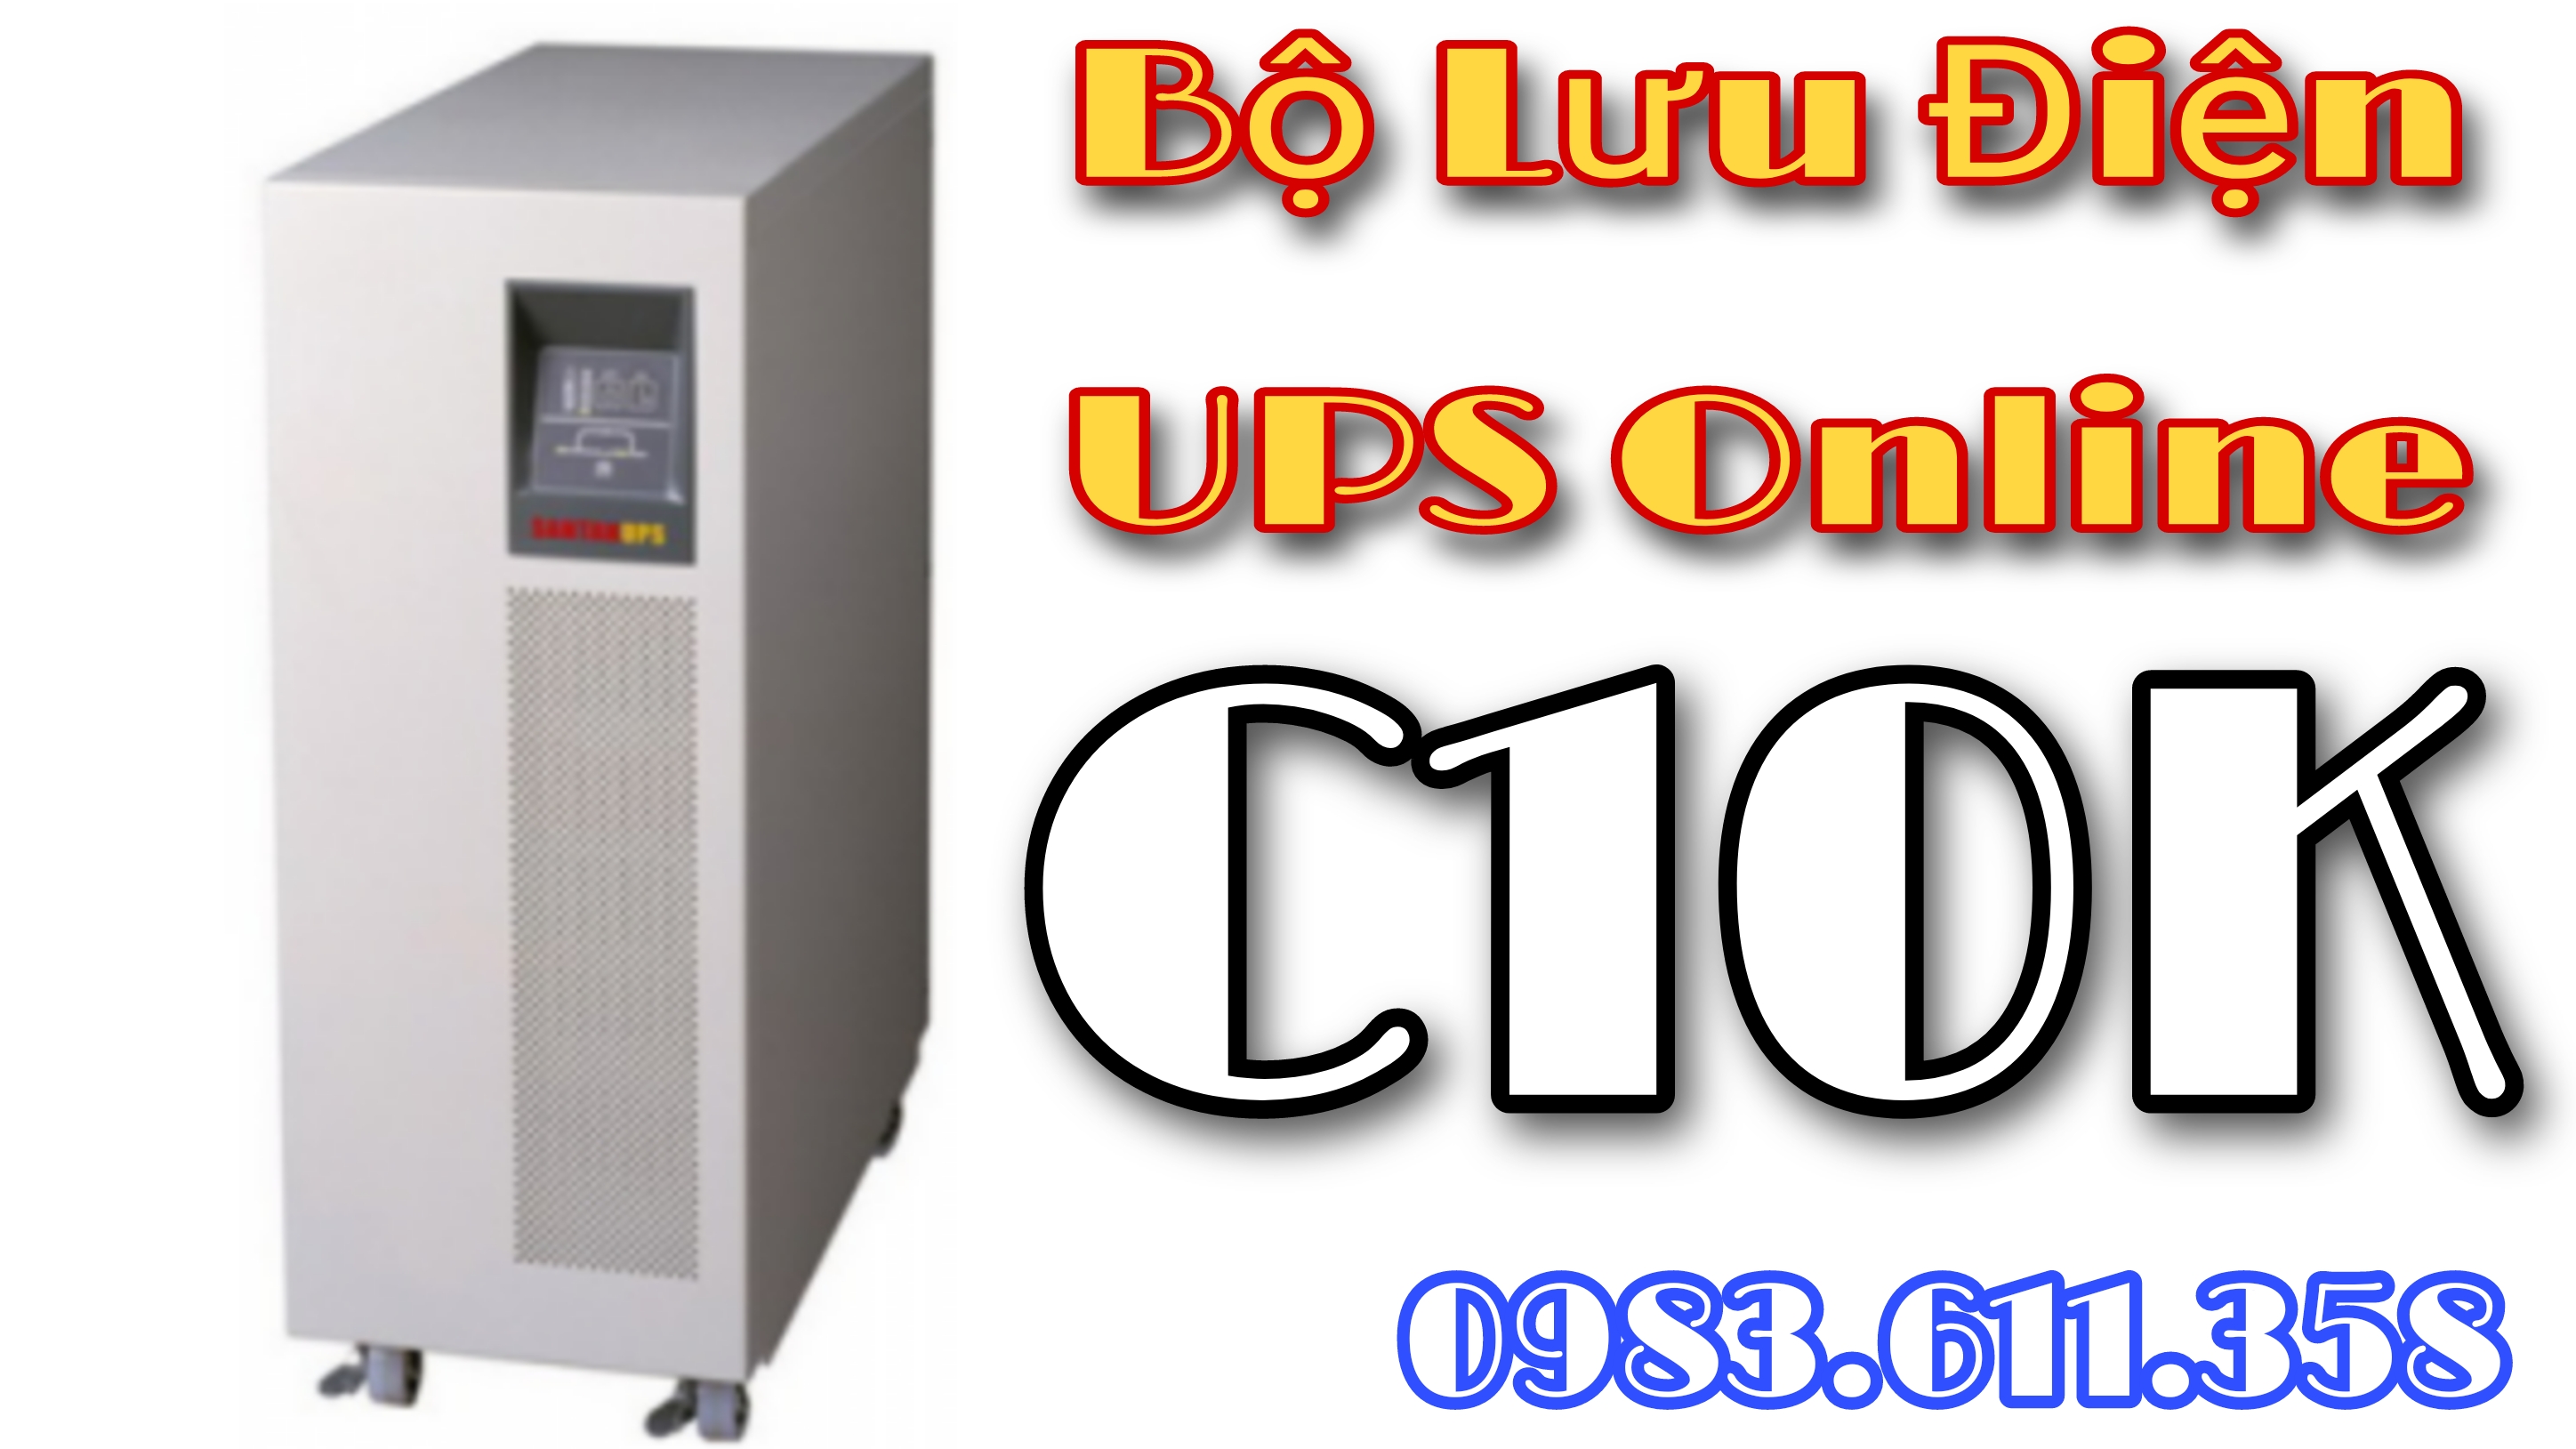 Bộ Lưu Điện UPS Online C10K | Điện tử ETS - dientuets.vn